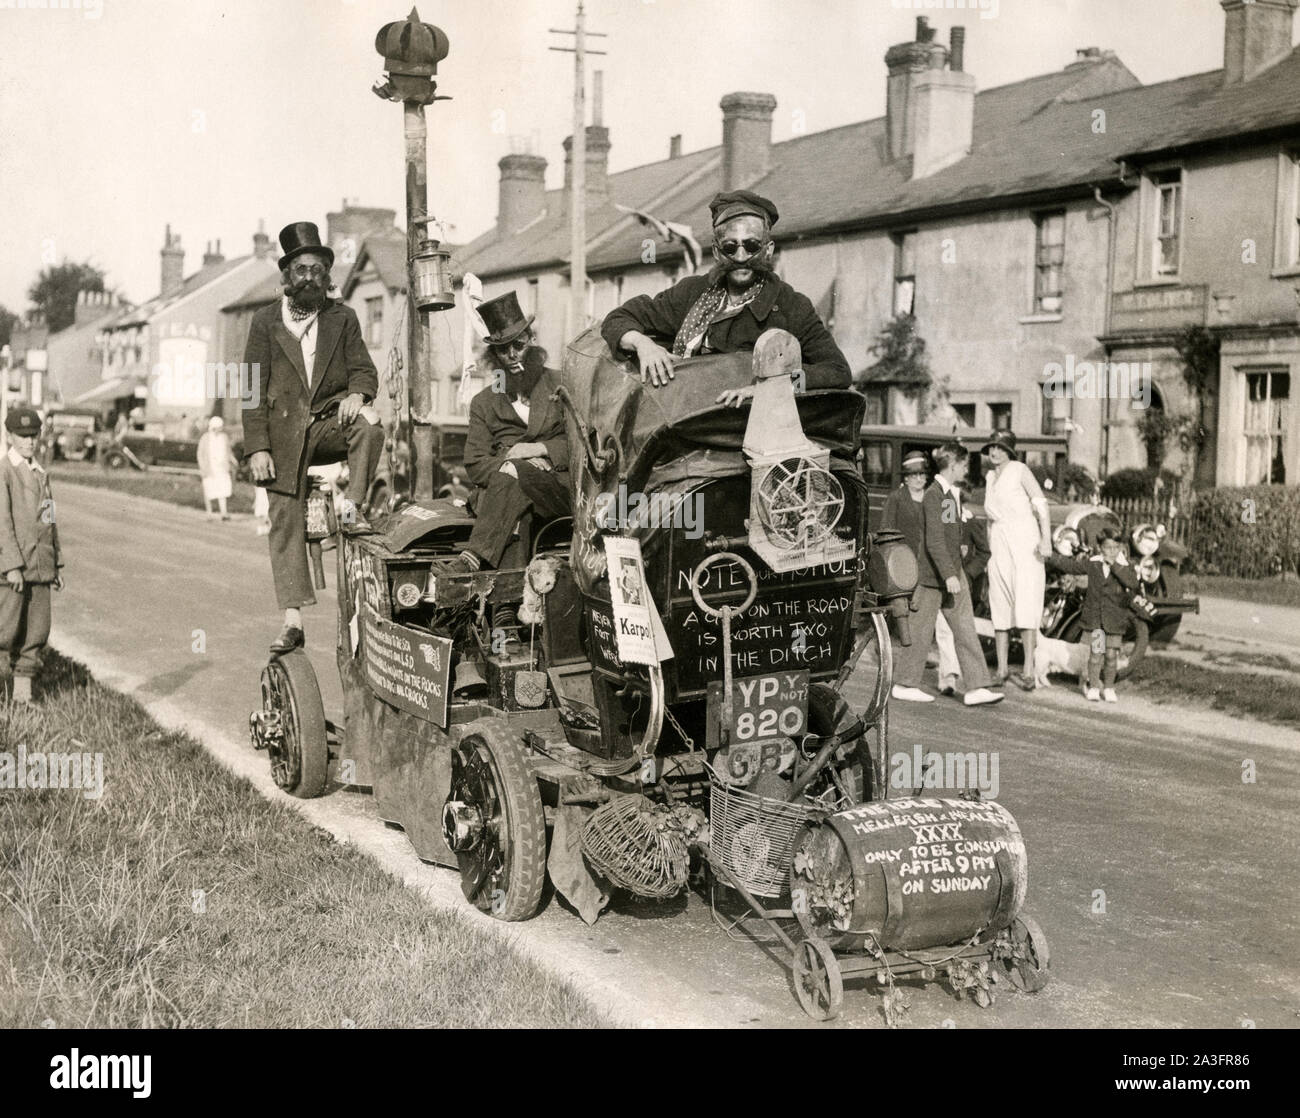 Photo de presse 1920 un carnaval float - une voiture intitulé the Idle Rich Banque D'Images